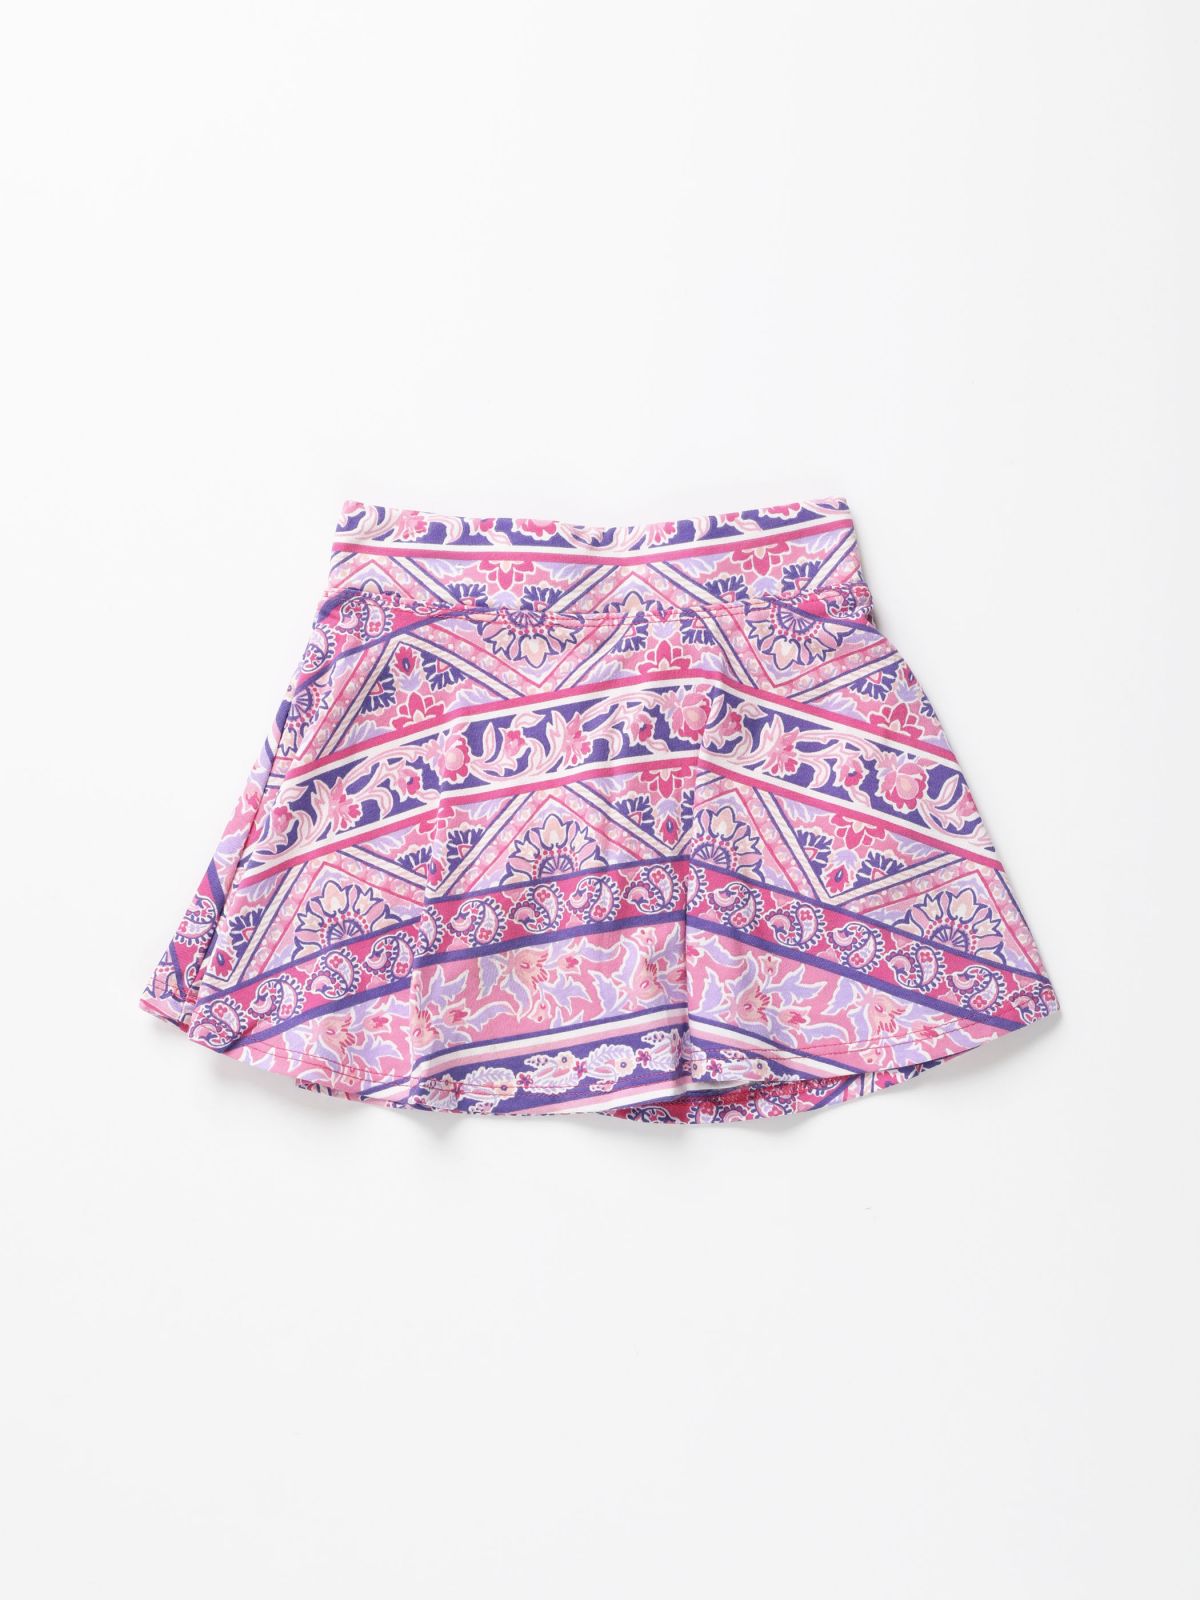  מכנסי חצאית מיני בהדפס צורות אתניות / בנות של THE CHILDREN'S PLACE 